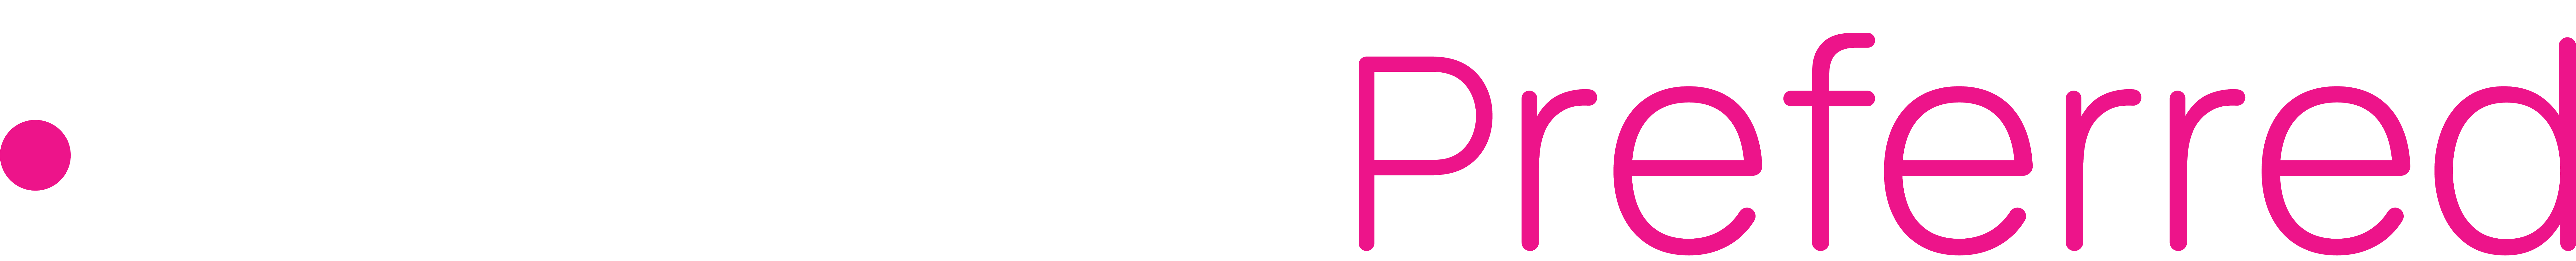 iSolved Logo